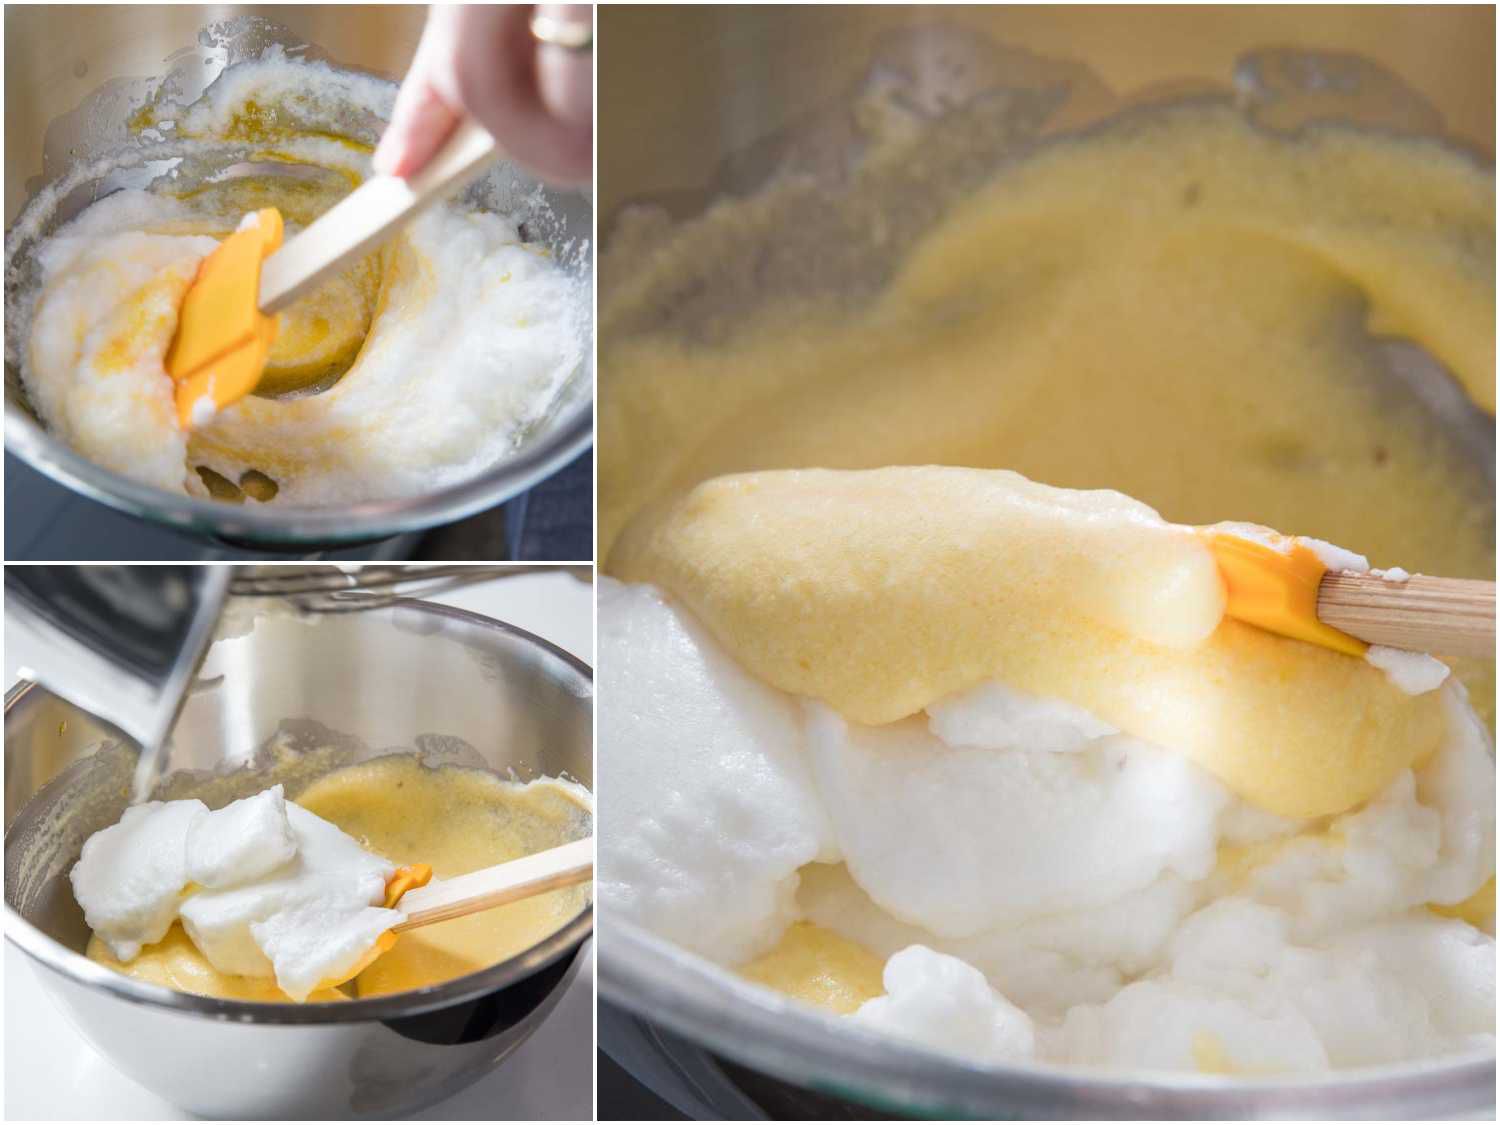 图片拼贴展示如何将蛋白折叠成蛋黄和奶酪的混合物soufflé煎蛋卷。